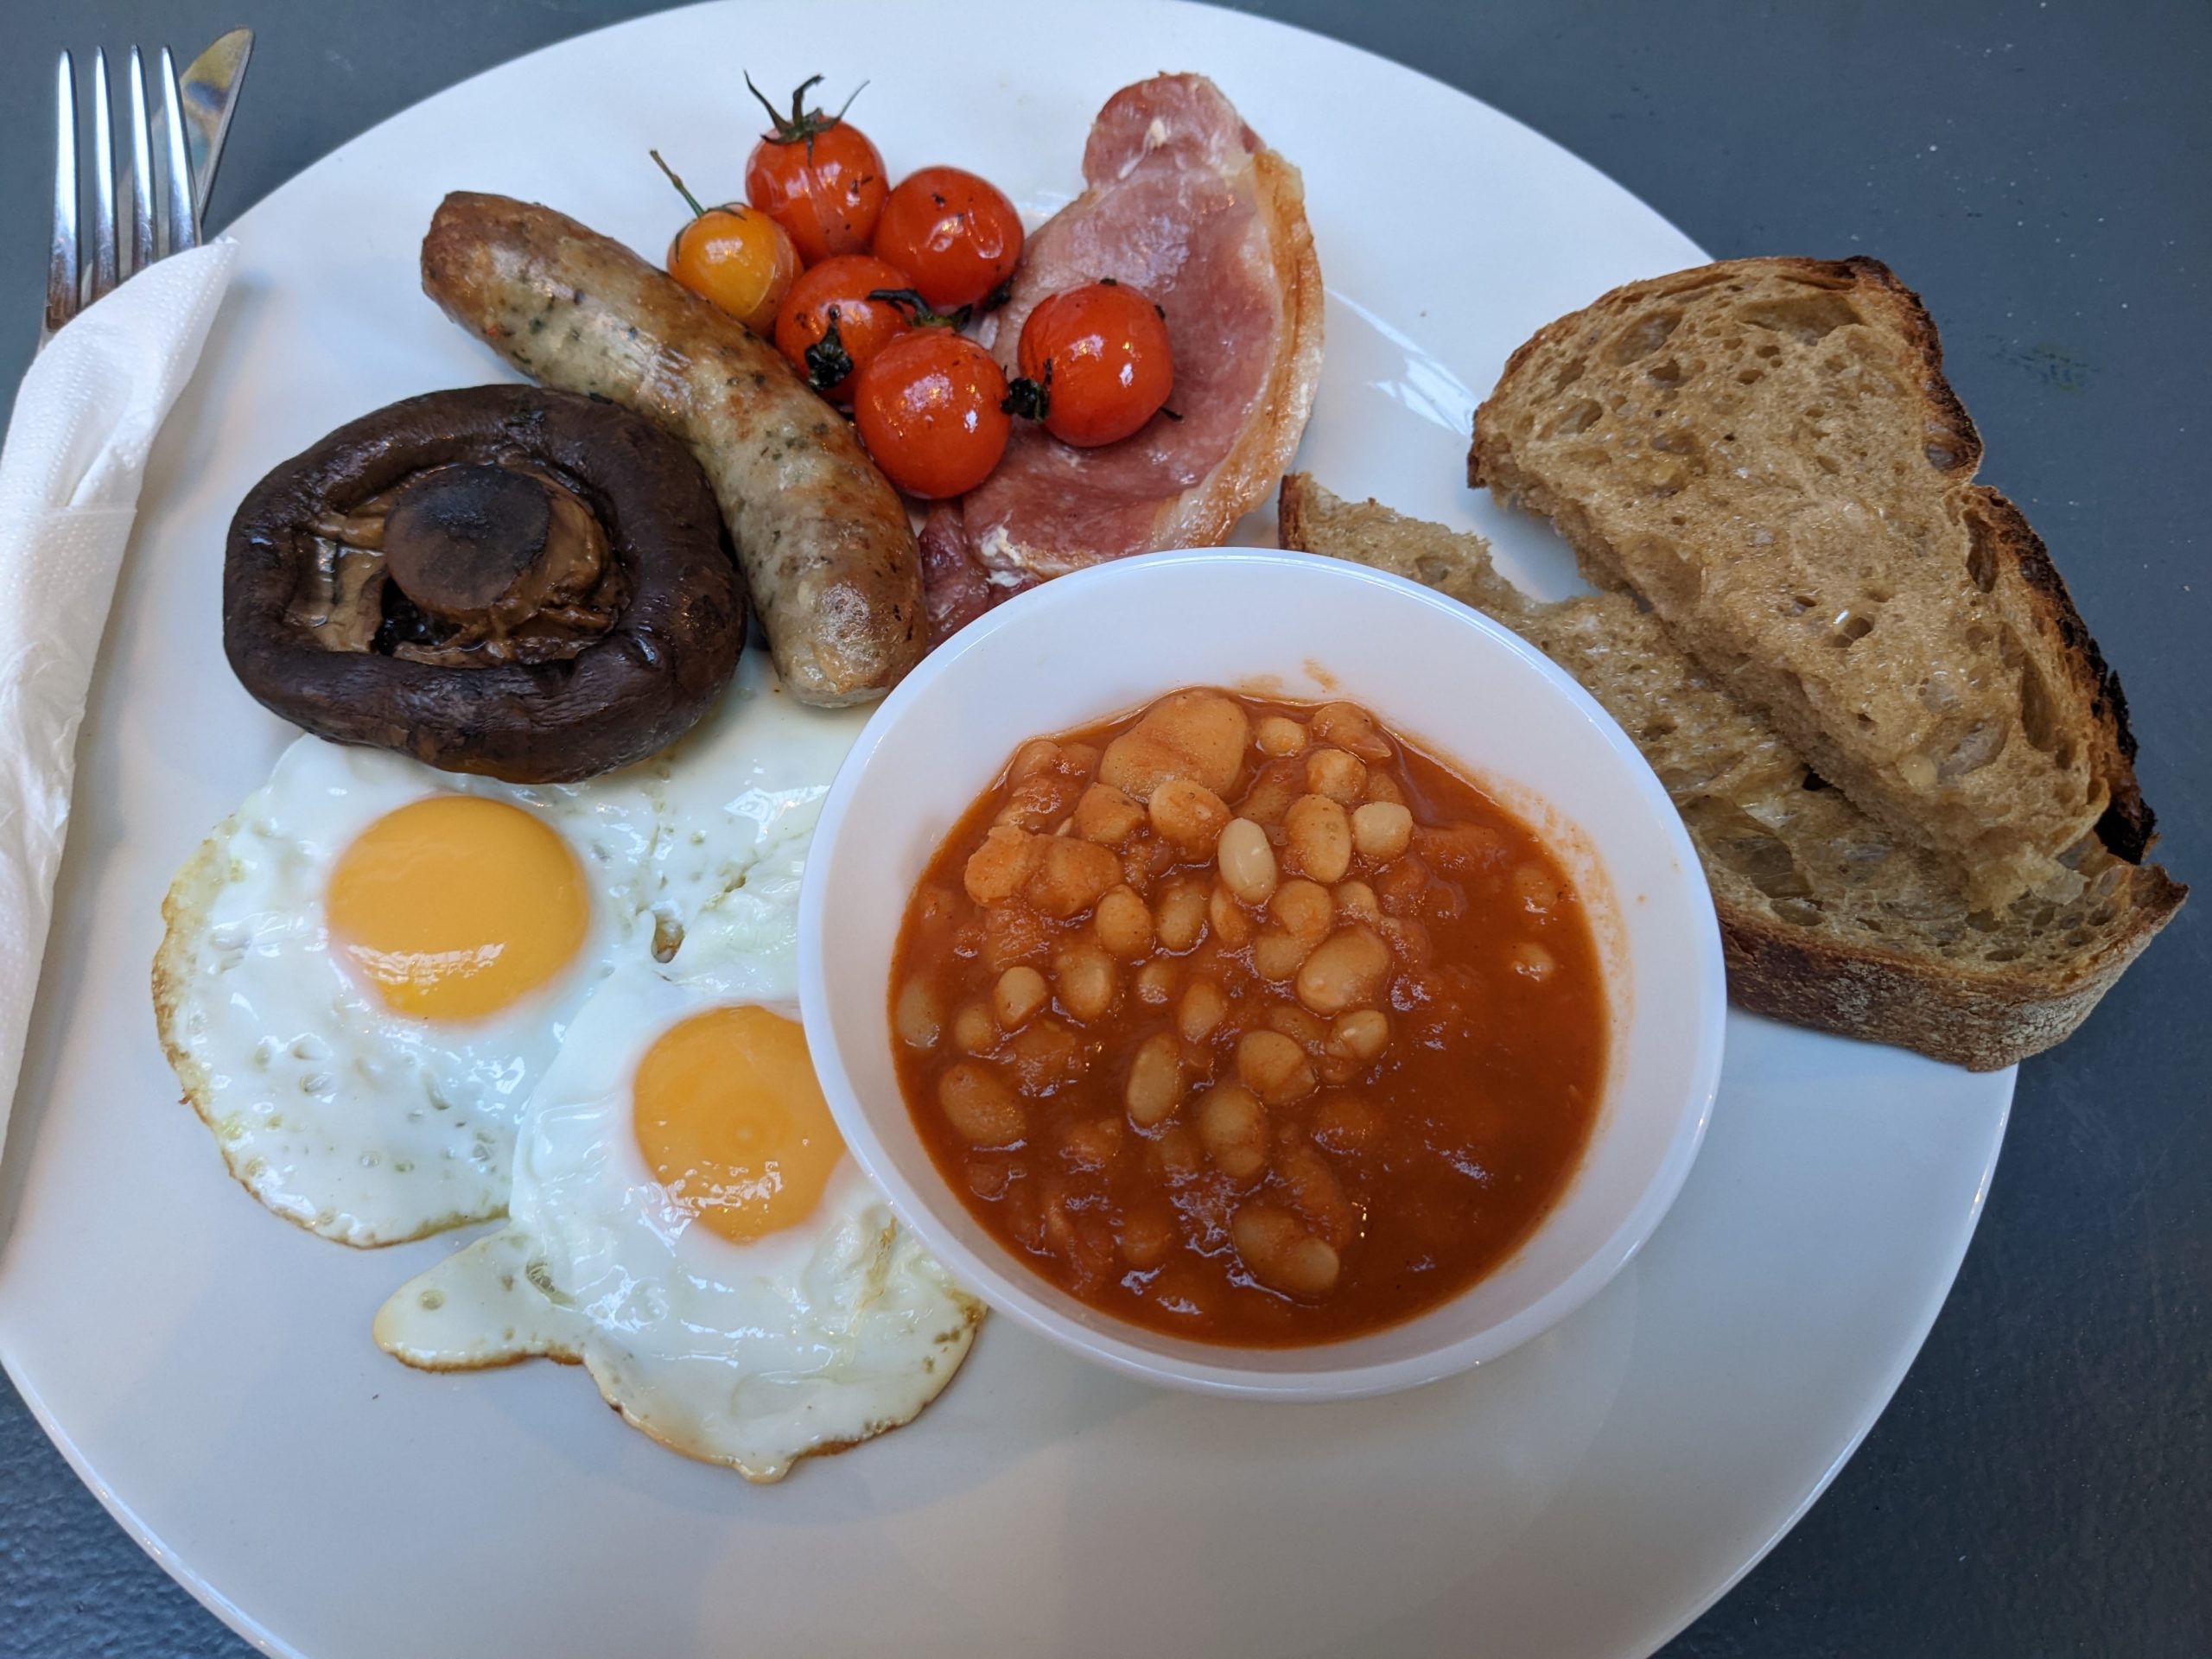 Na tanieri sú dve vajíčka, hríb, klobása, paradajky, slanina, fazuľová omáčka a opečený chlieb. Je to jedlo English Breakfast.